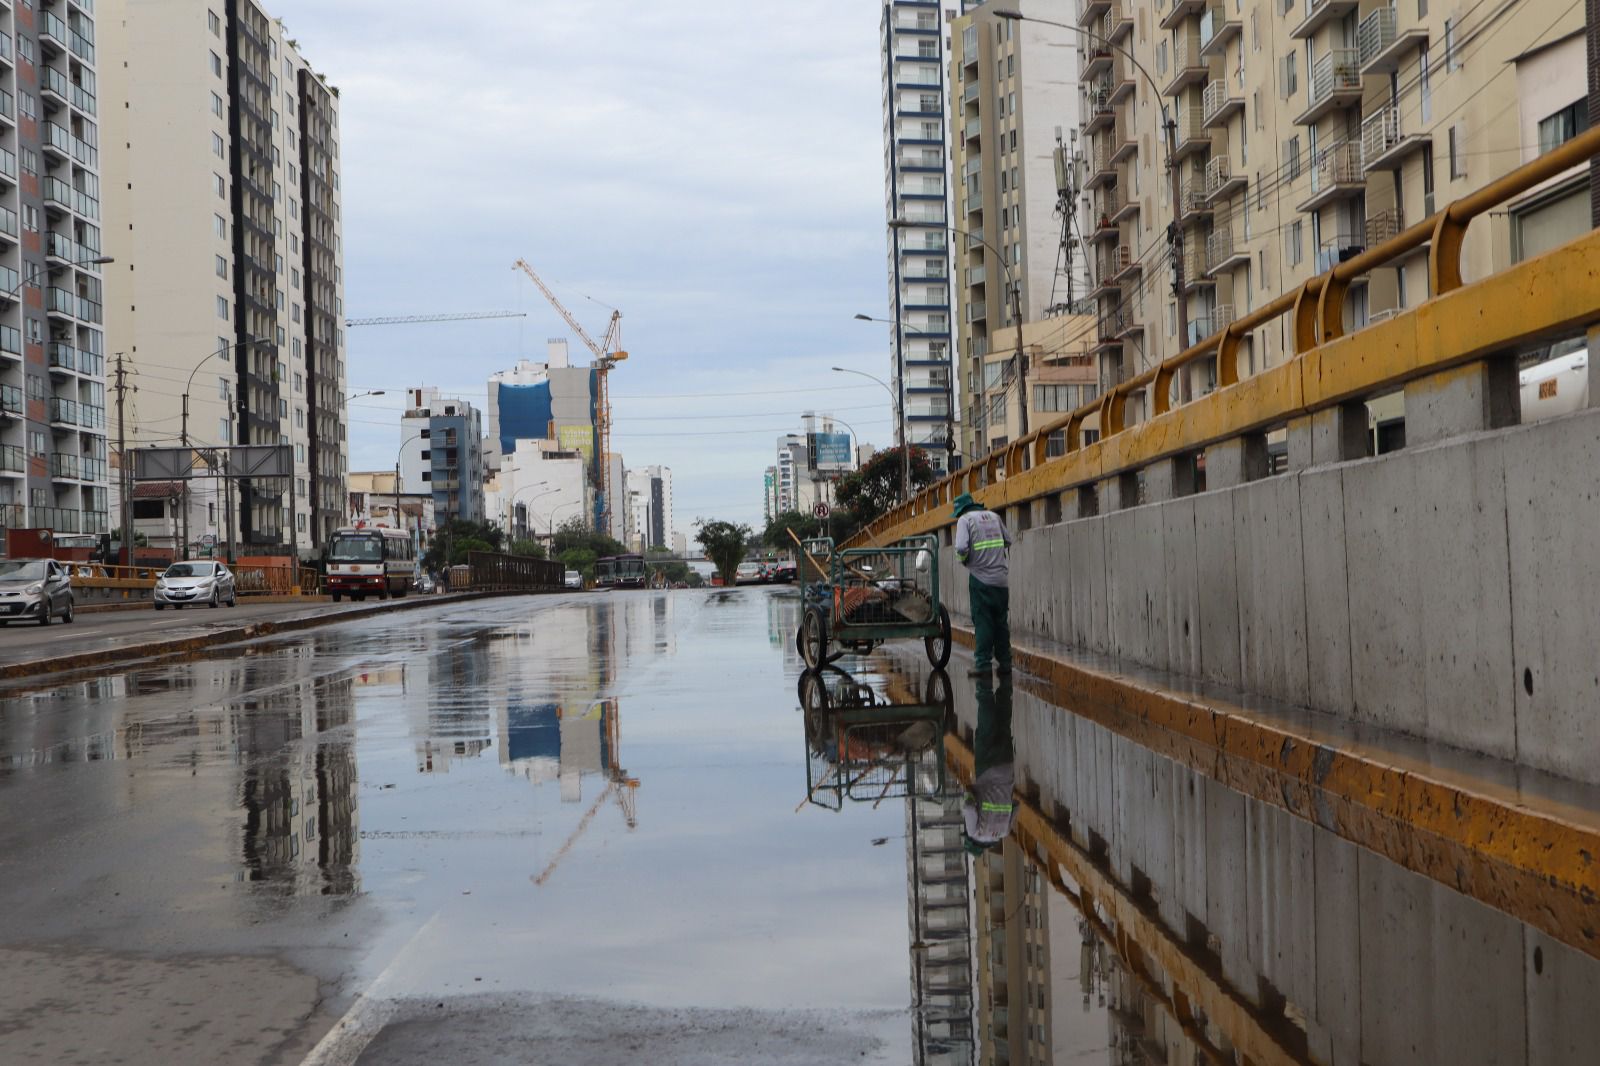 Labores de limpieza en puente de la Av. Brasil por parte de la Municipalidad de Lima. Trabajos para despejar vías tendrá una duración aproximada de 1 hora sin uso de maquinaria